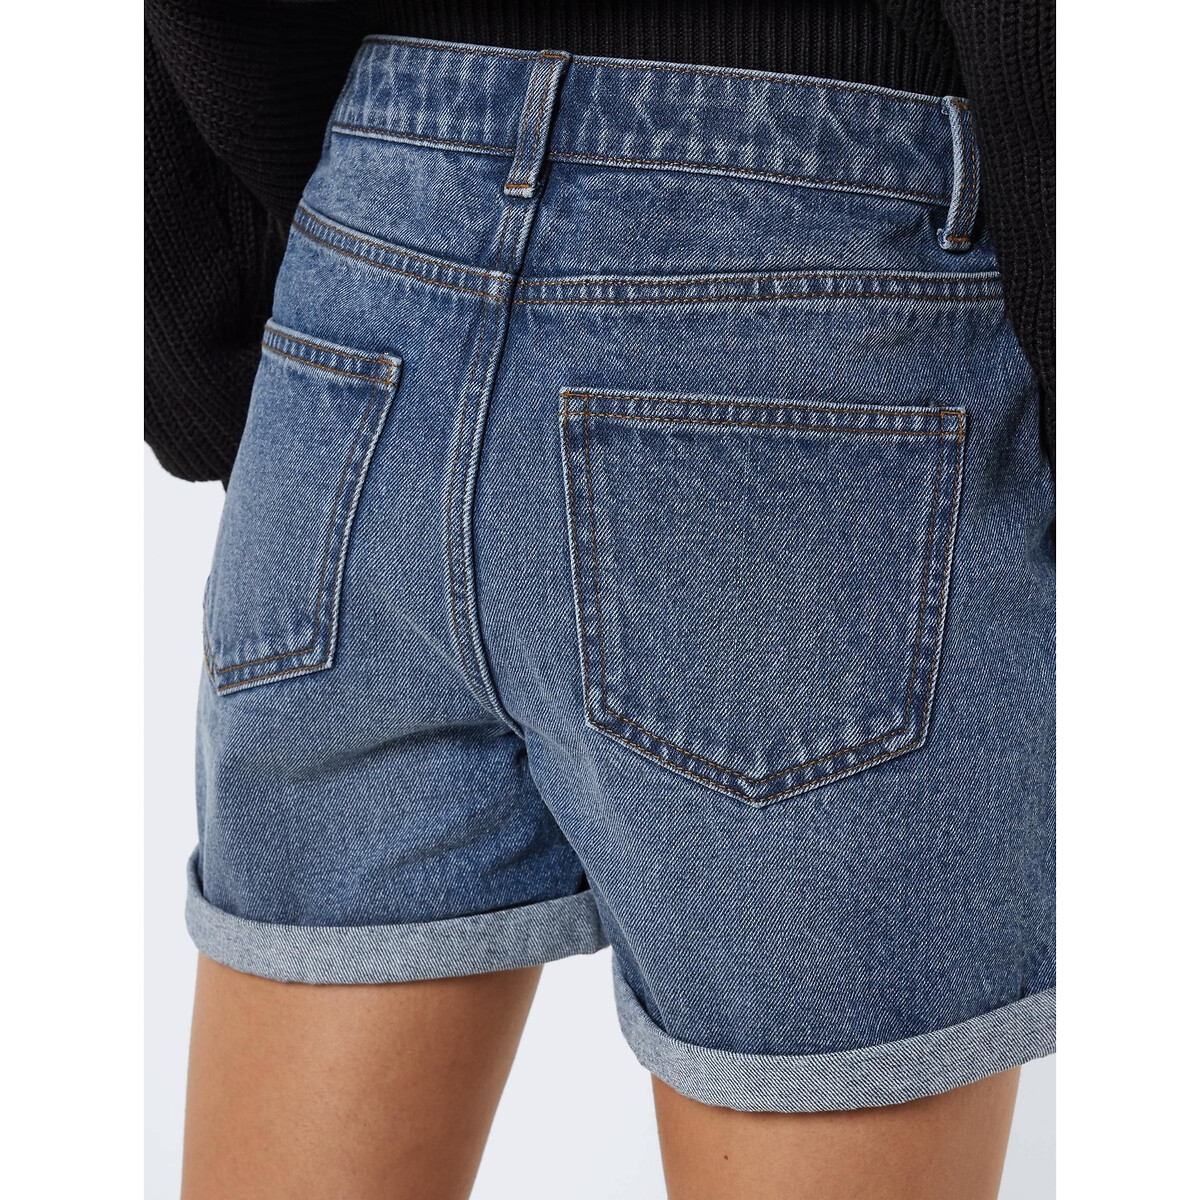 Шорты Из джинсовой ткани S синий LaRedoute, размер S - фото 3